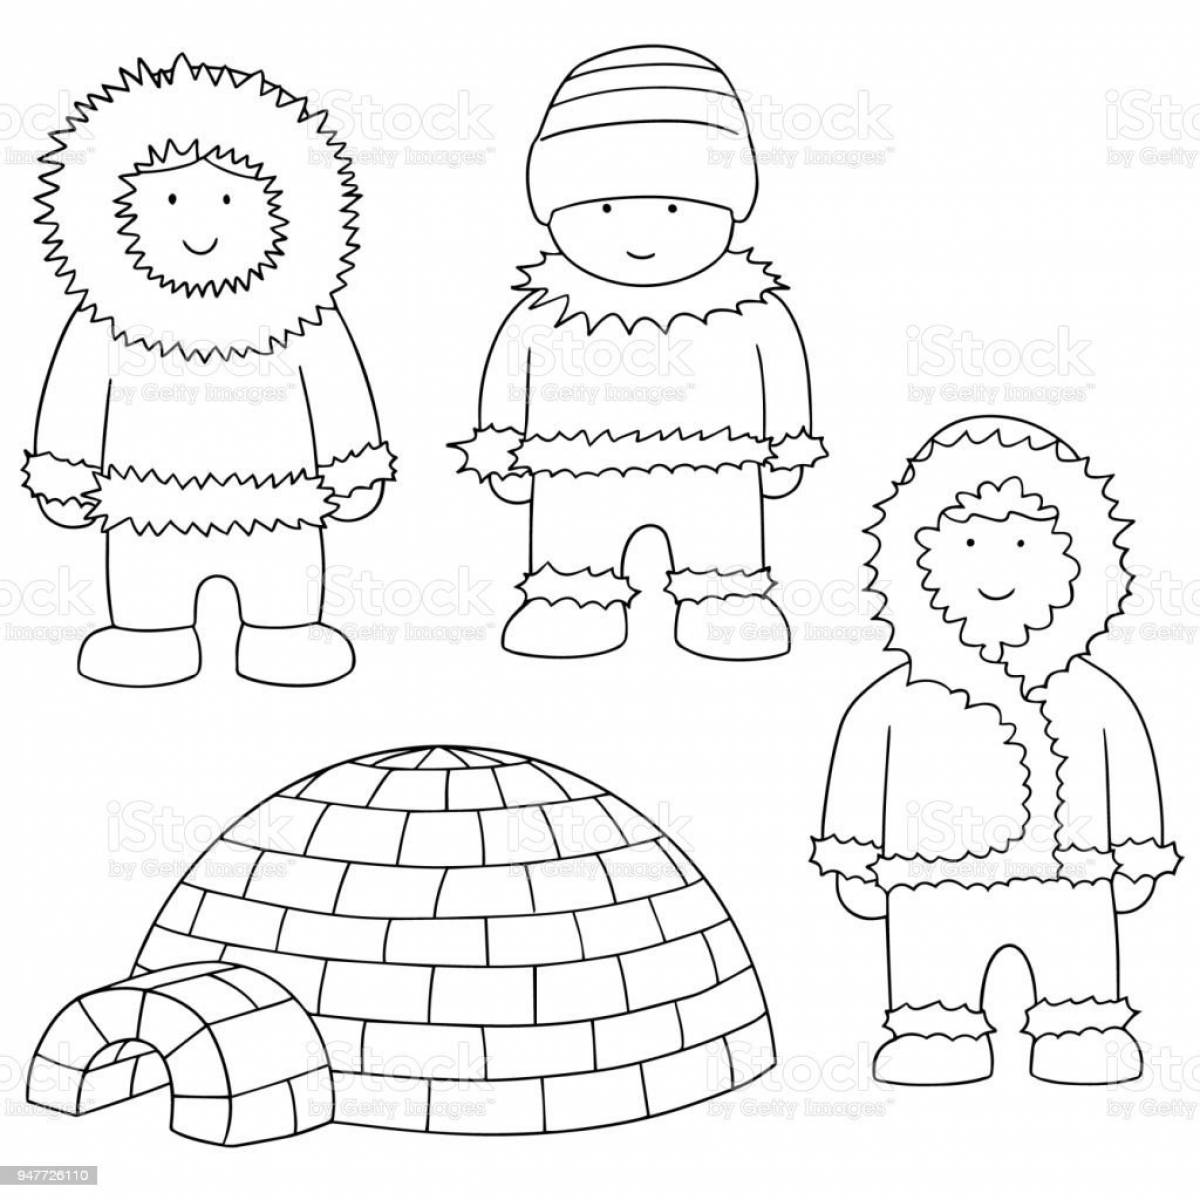 Colouring funny eskimo children